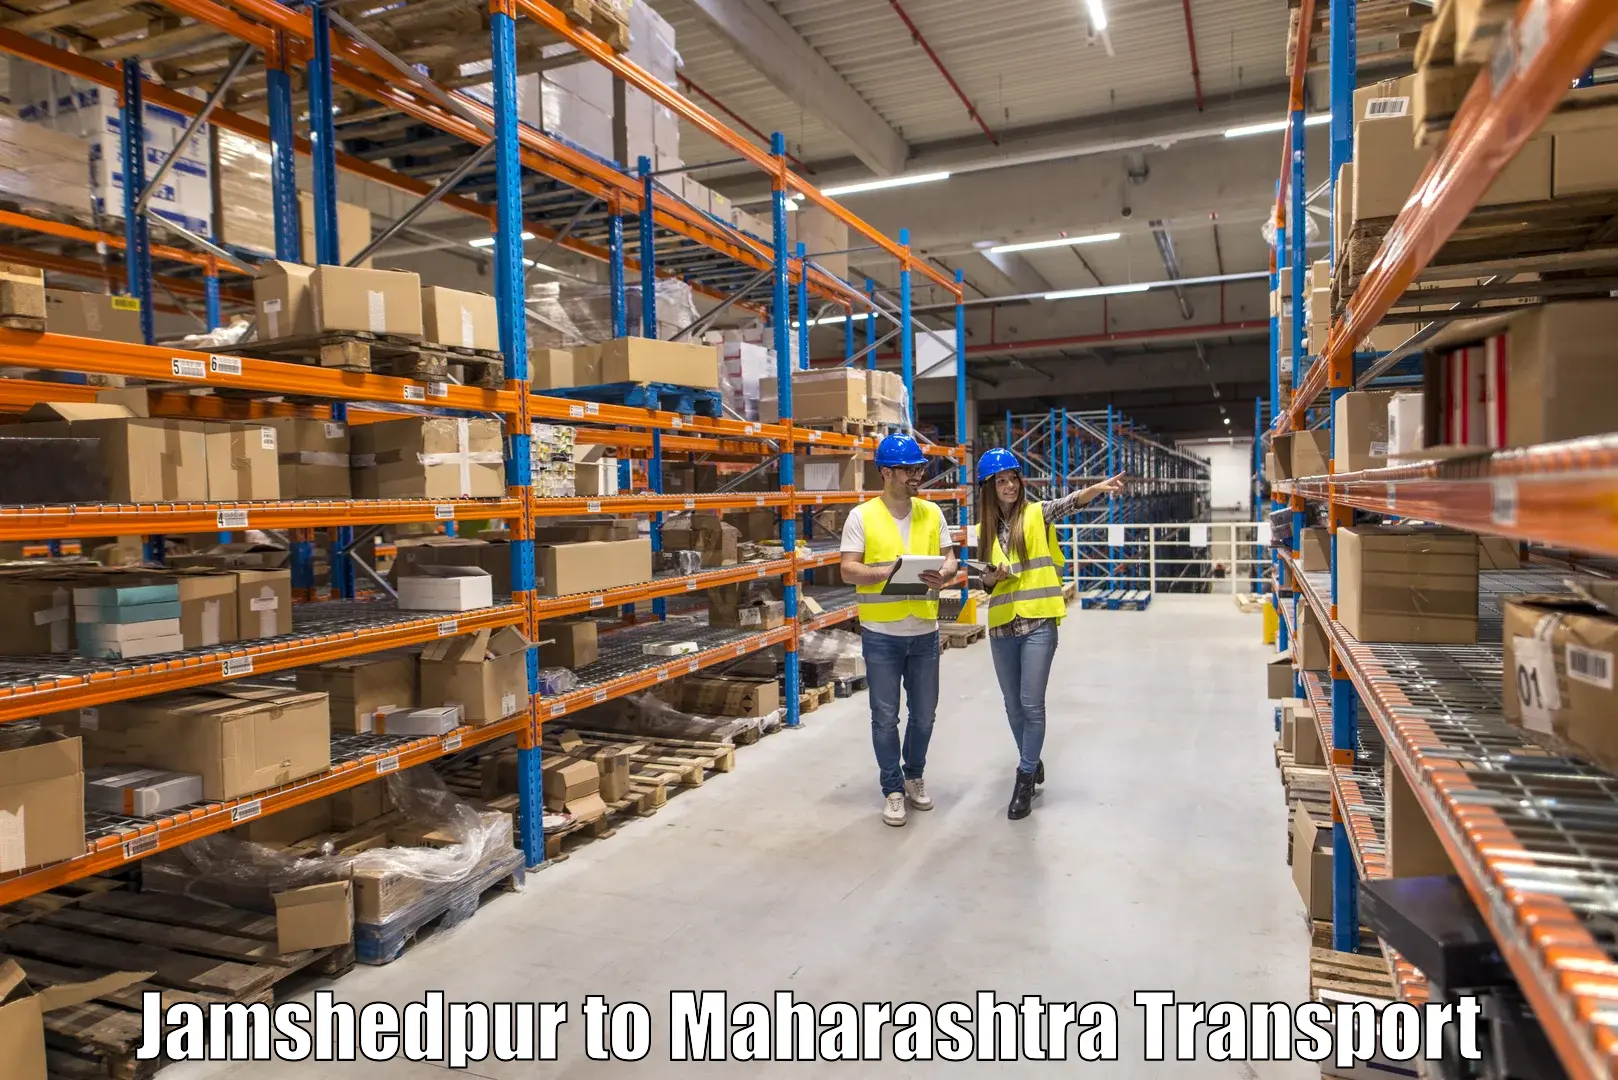 Transportation solution services Jamshedpur to Dindori Nashik